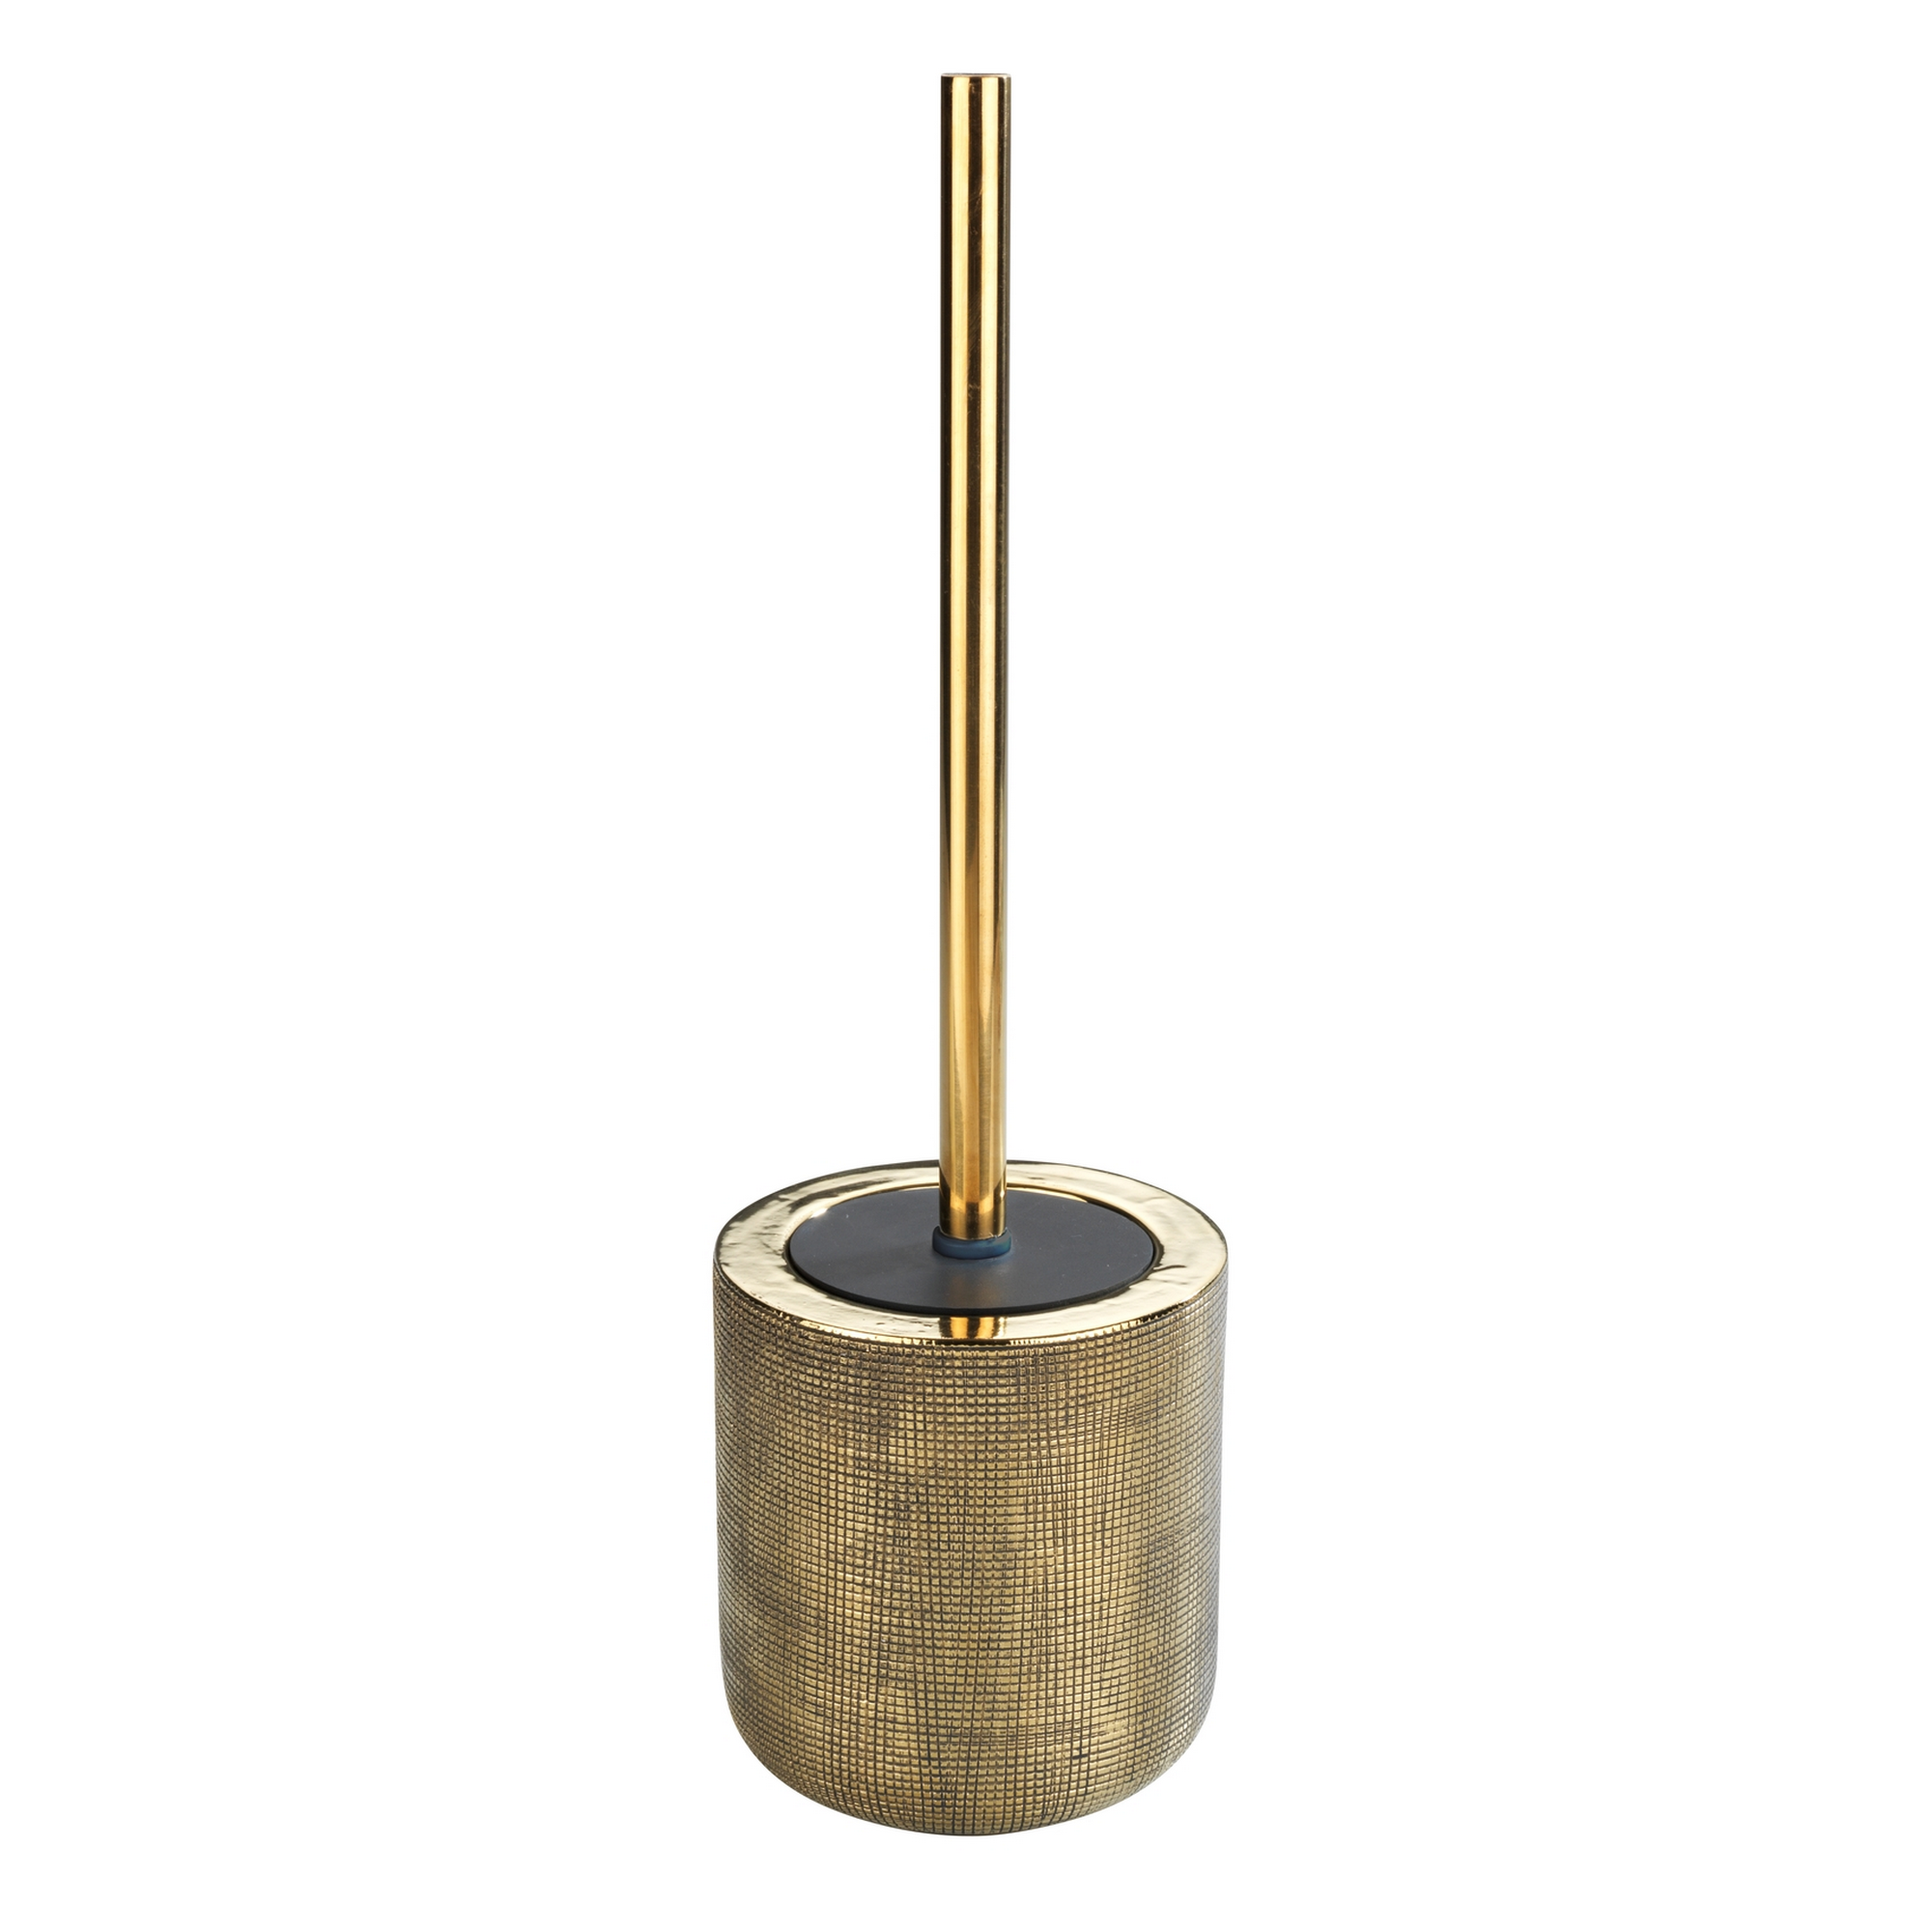 WC-Garnitur 'Rivara' Keramik gold + product picture